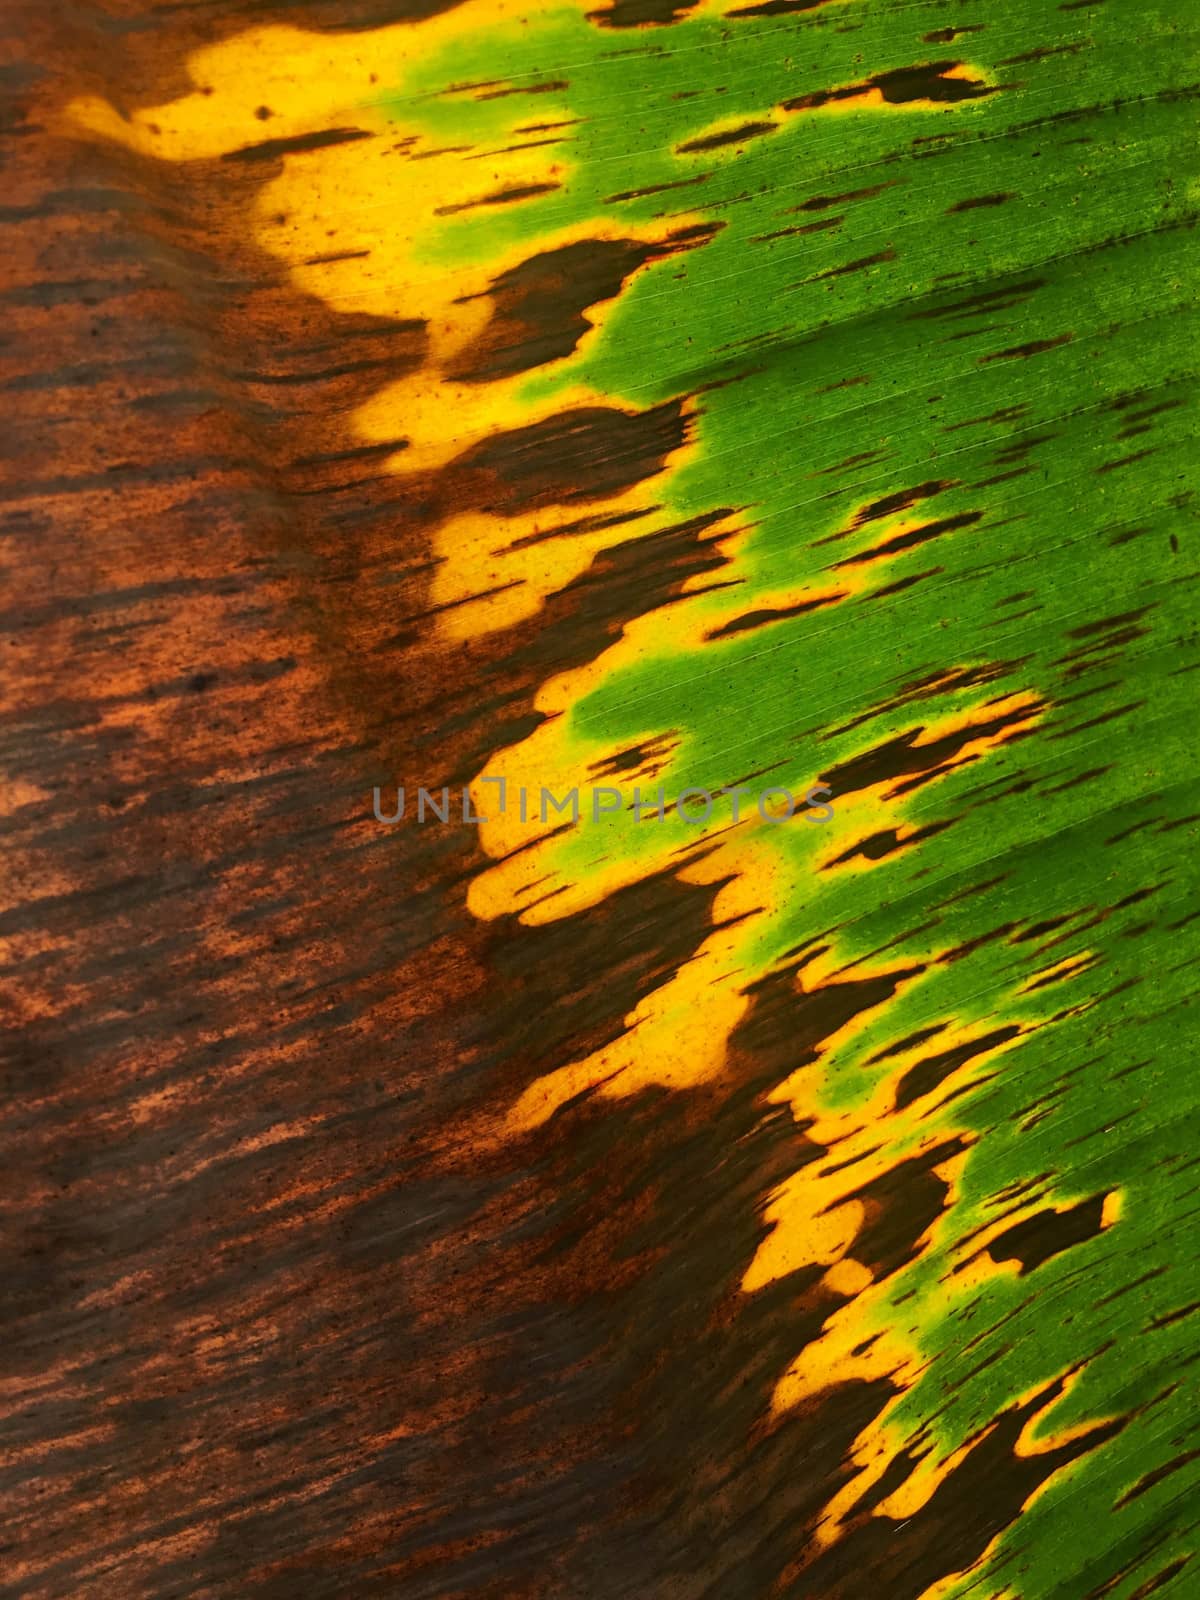 Texture on banana leaf from banana tree.